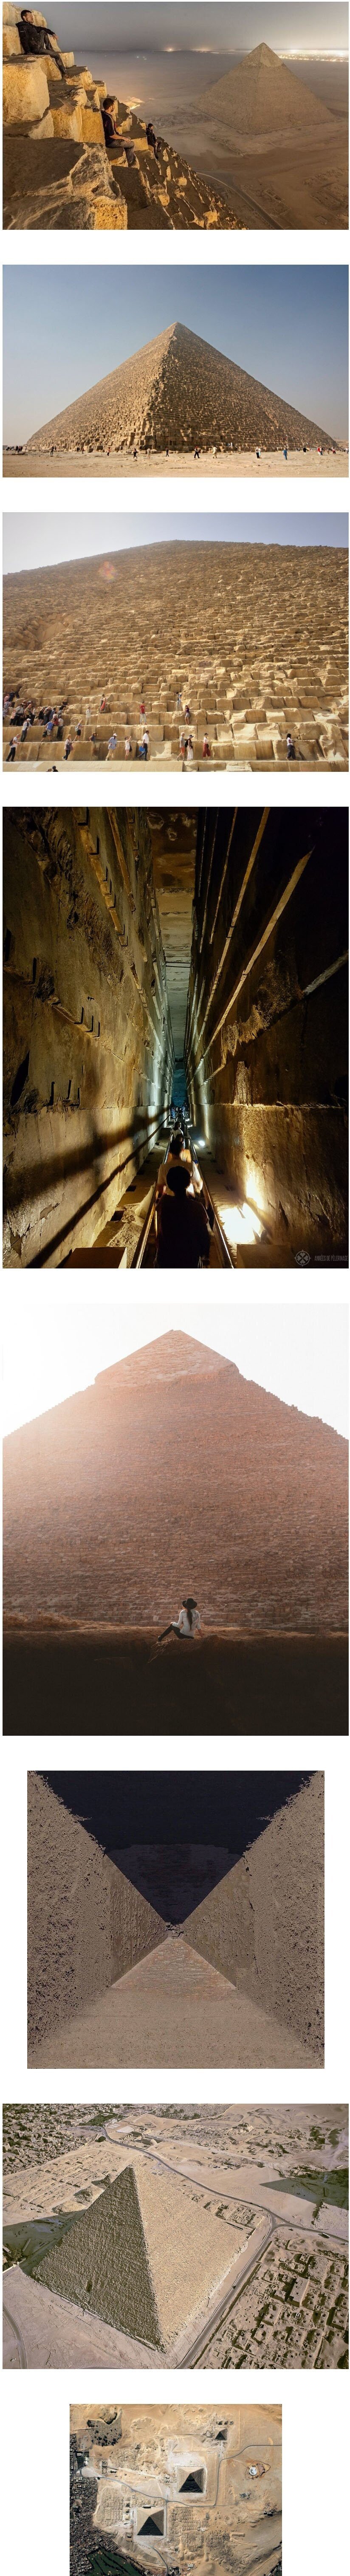 피라미드를 다각도에서 보면?